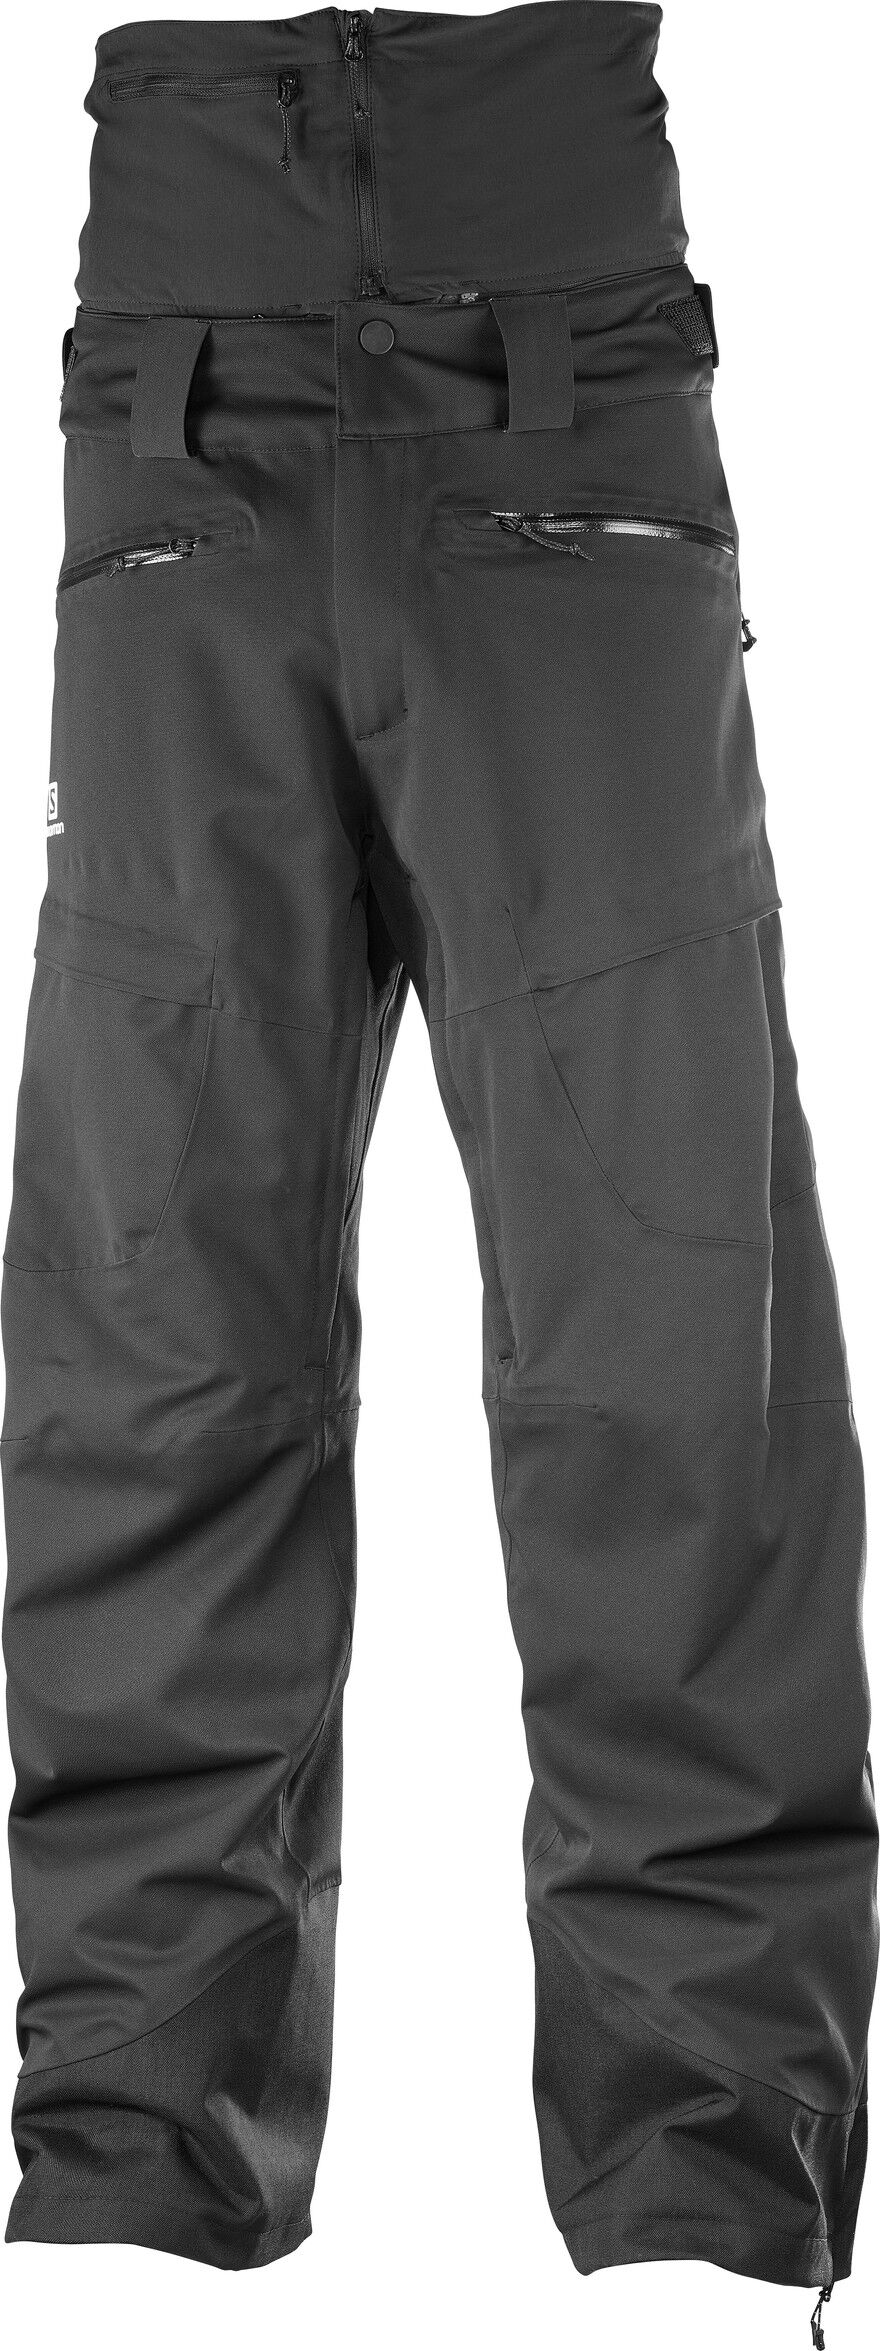 Salomon - Qst Guard Pant M - Ski trousers - Men's